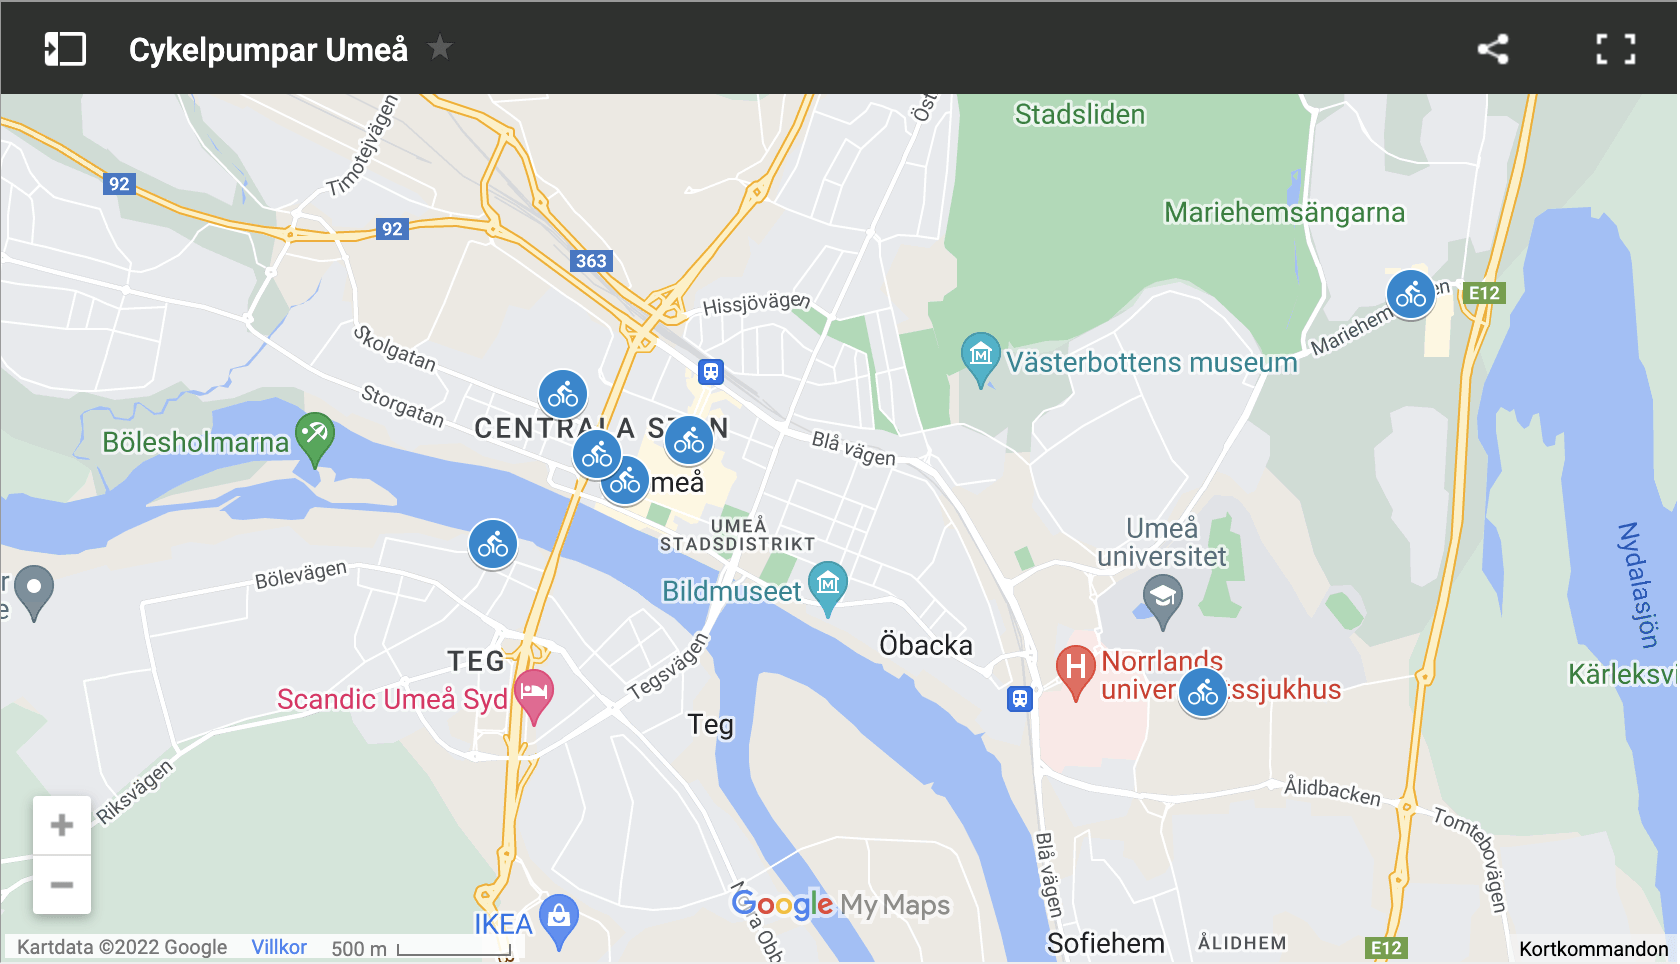 Karta över cykelpumpar/luftpumpar i Umeå